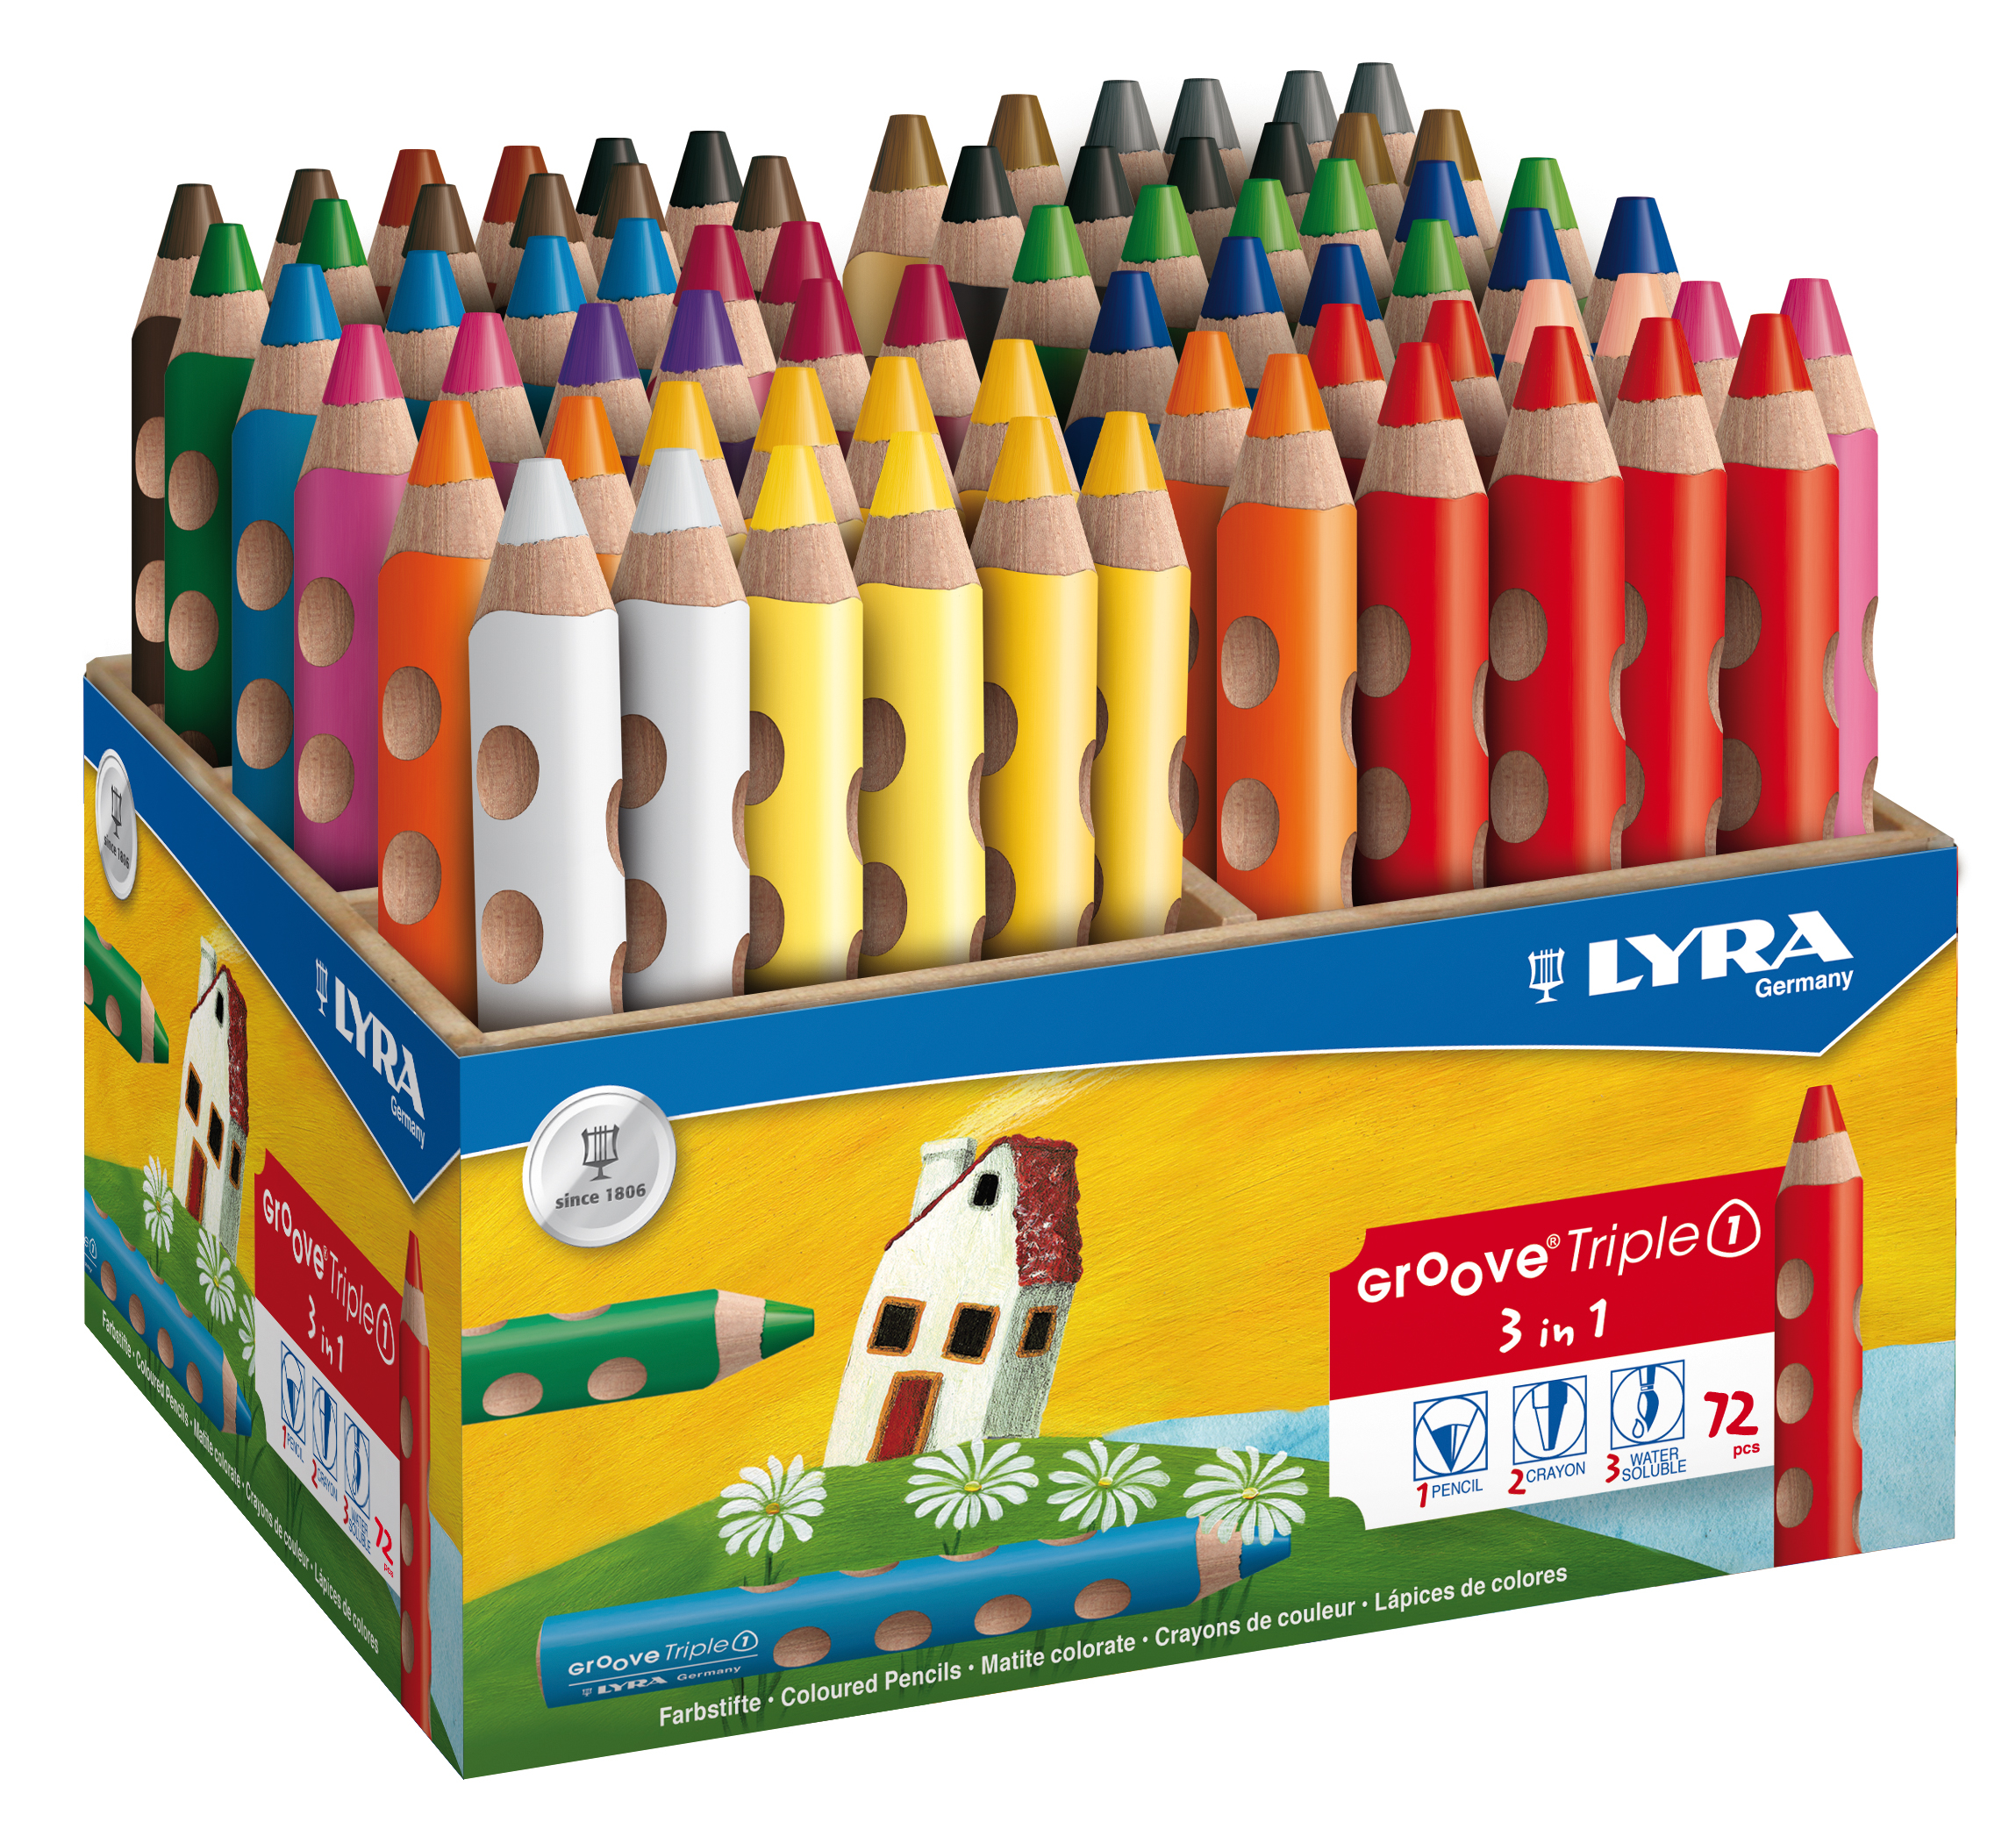 LYRA Crayon de couleur Triple 1 3832720 Box 72 pcs. Box 72 pcs.